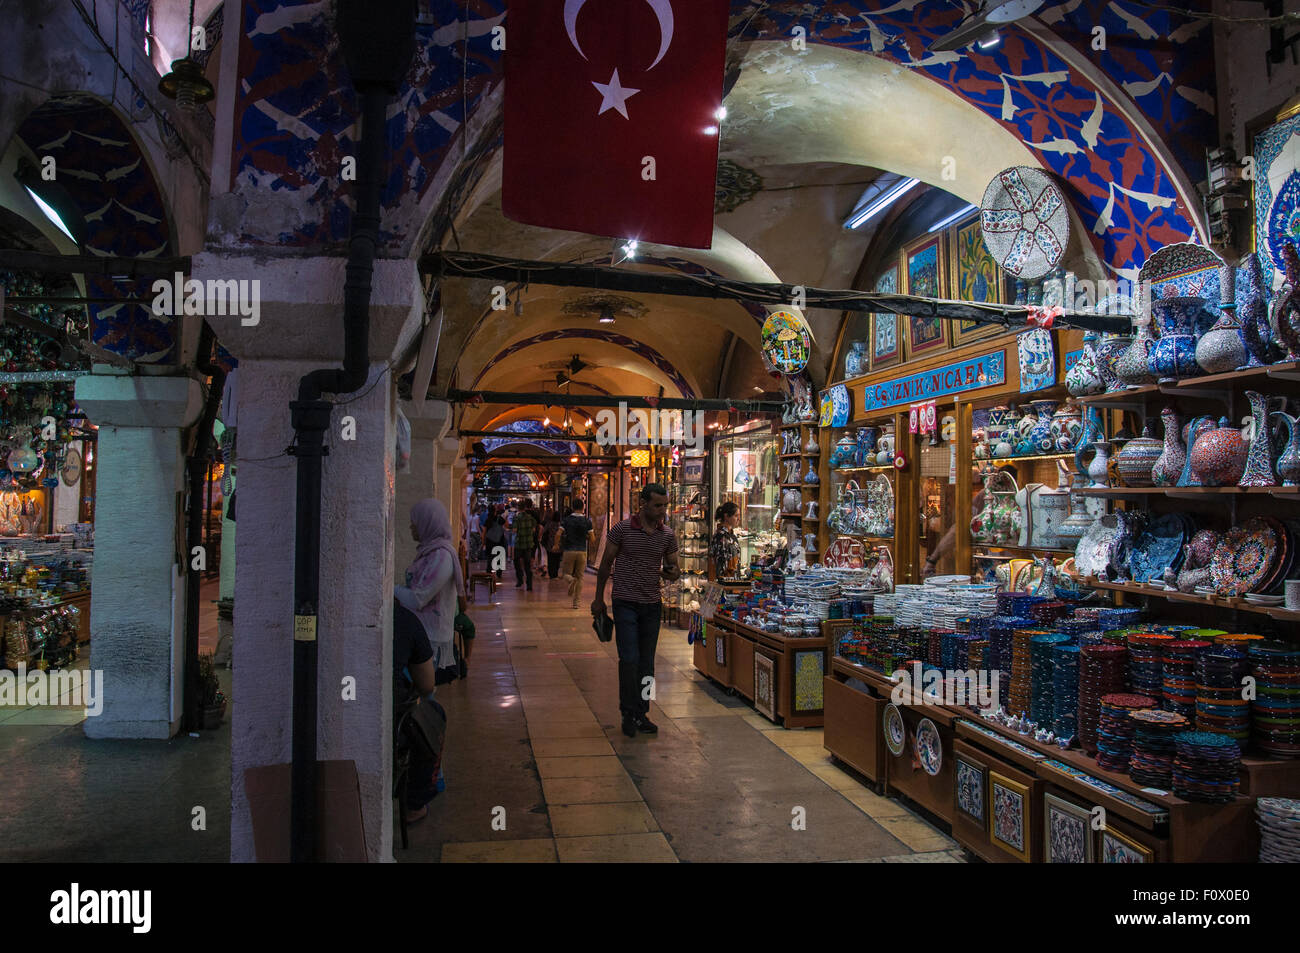 Estambul, Turquía - Agosto 19, 2015: el Stand de mercancía turca en el Bazar de Estambul. Disparo de Estambul. Foto de stock